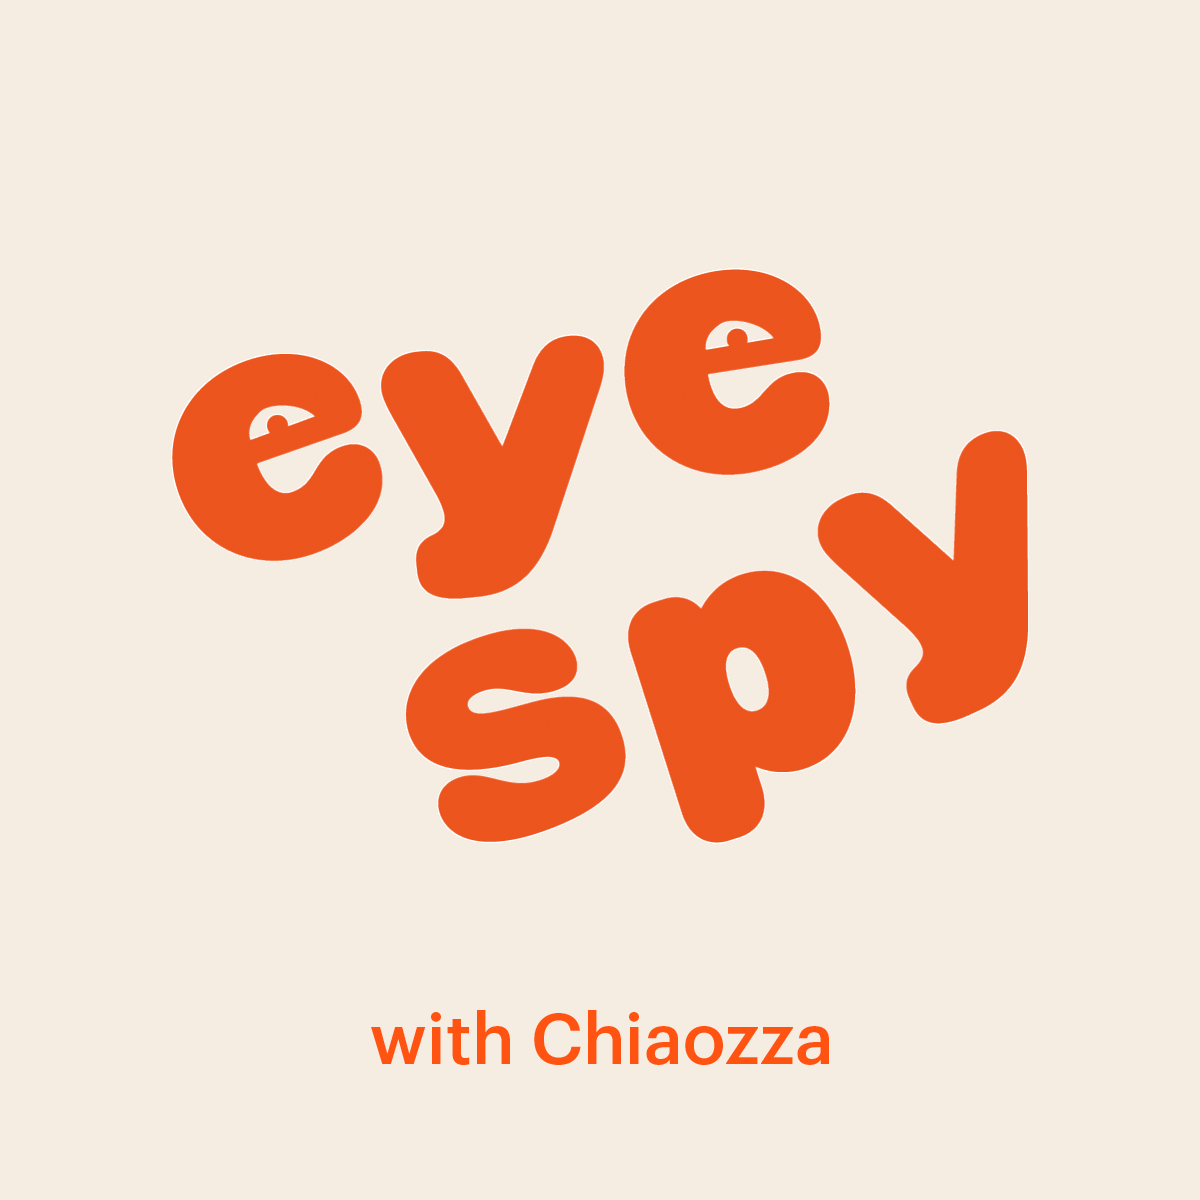 Eye Spy with Chiaozza